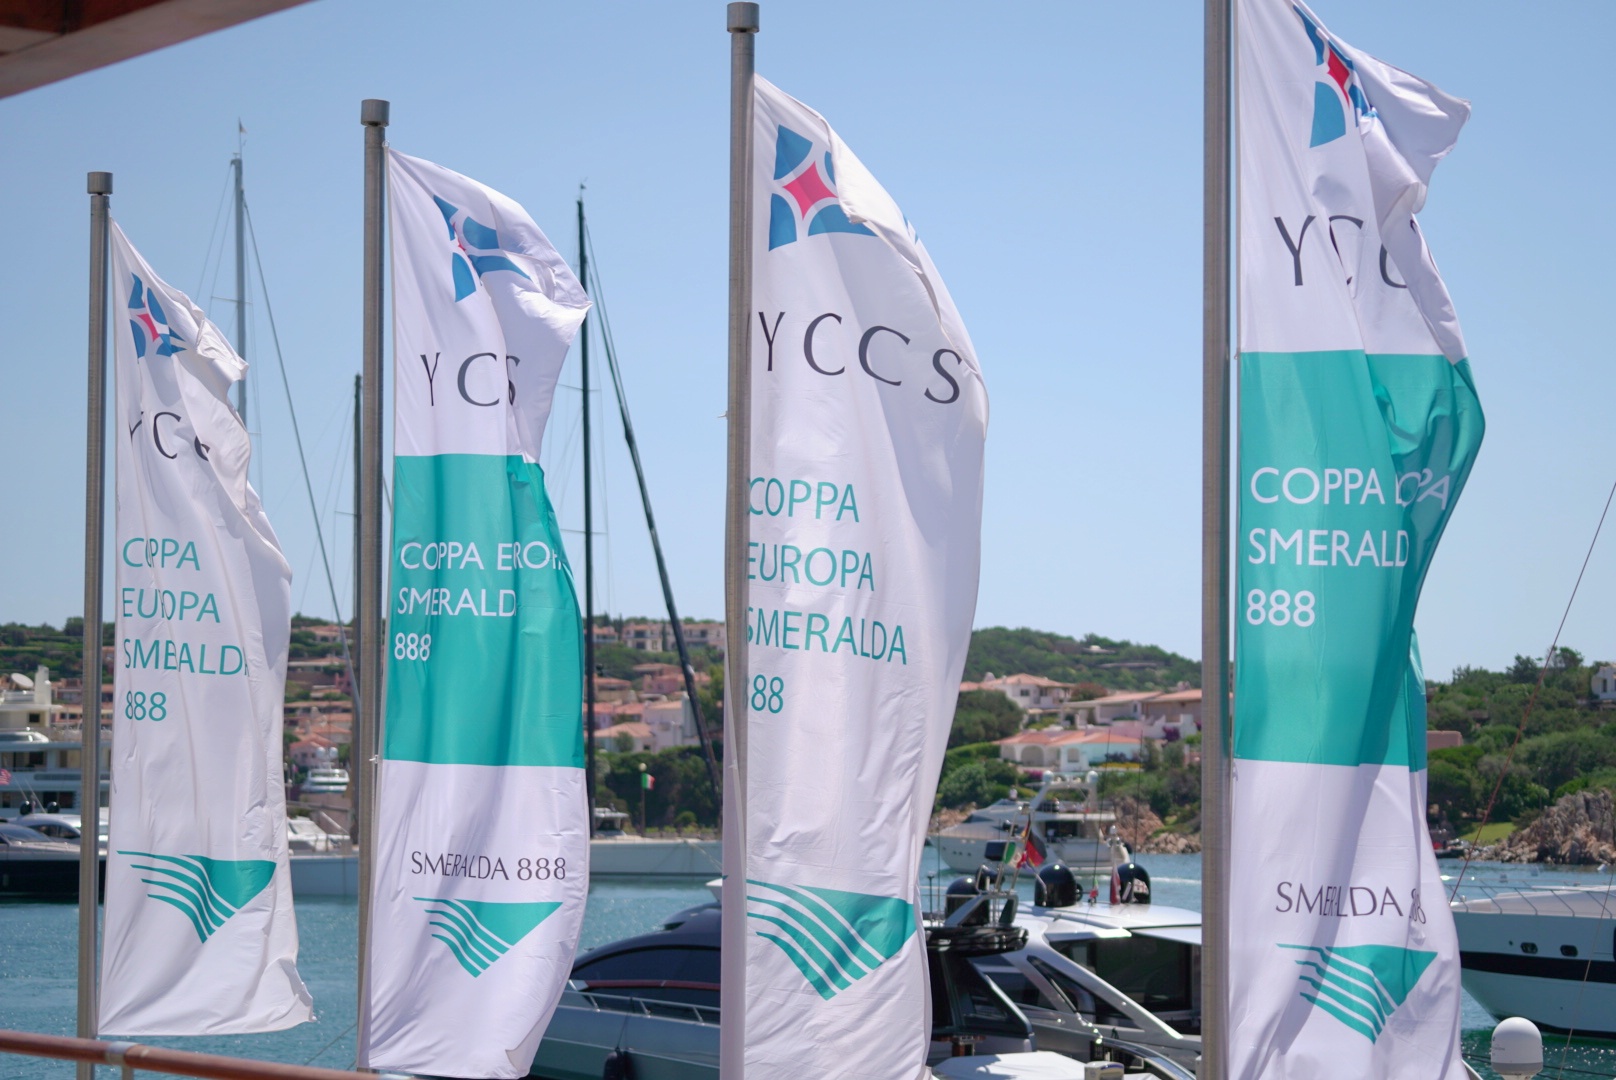 Al via oggi la 19^ edizione della Coppa Europa Smeralda 888 - News - Yacht Club Costa Smeralda